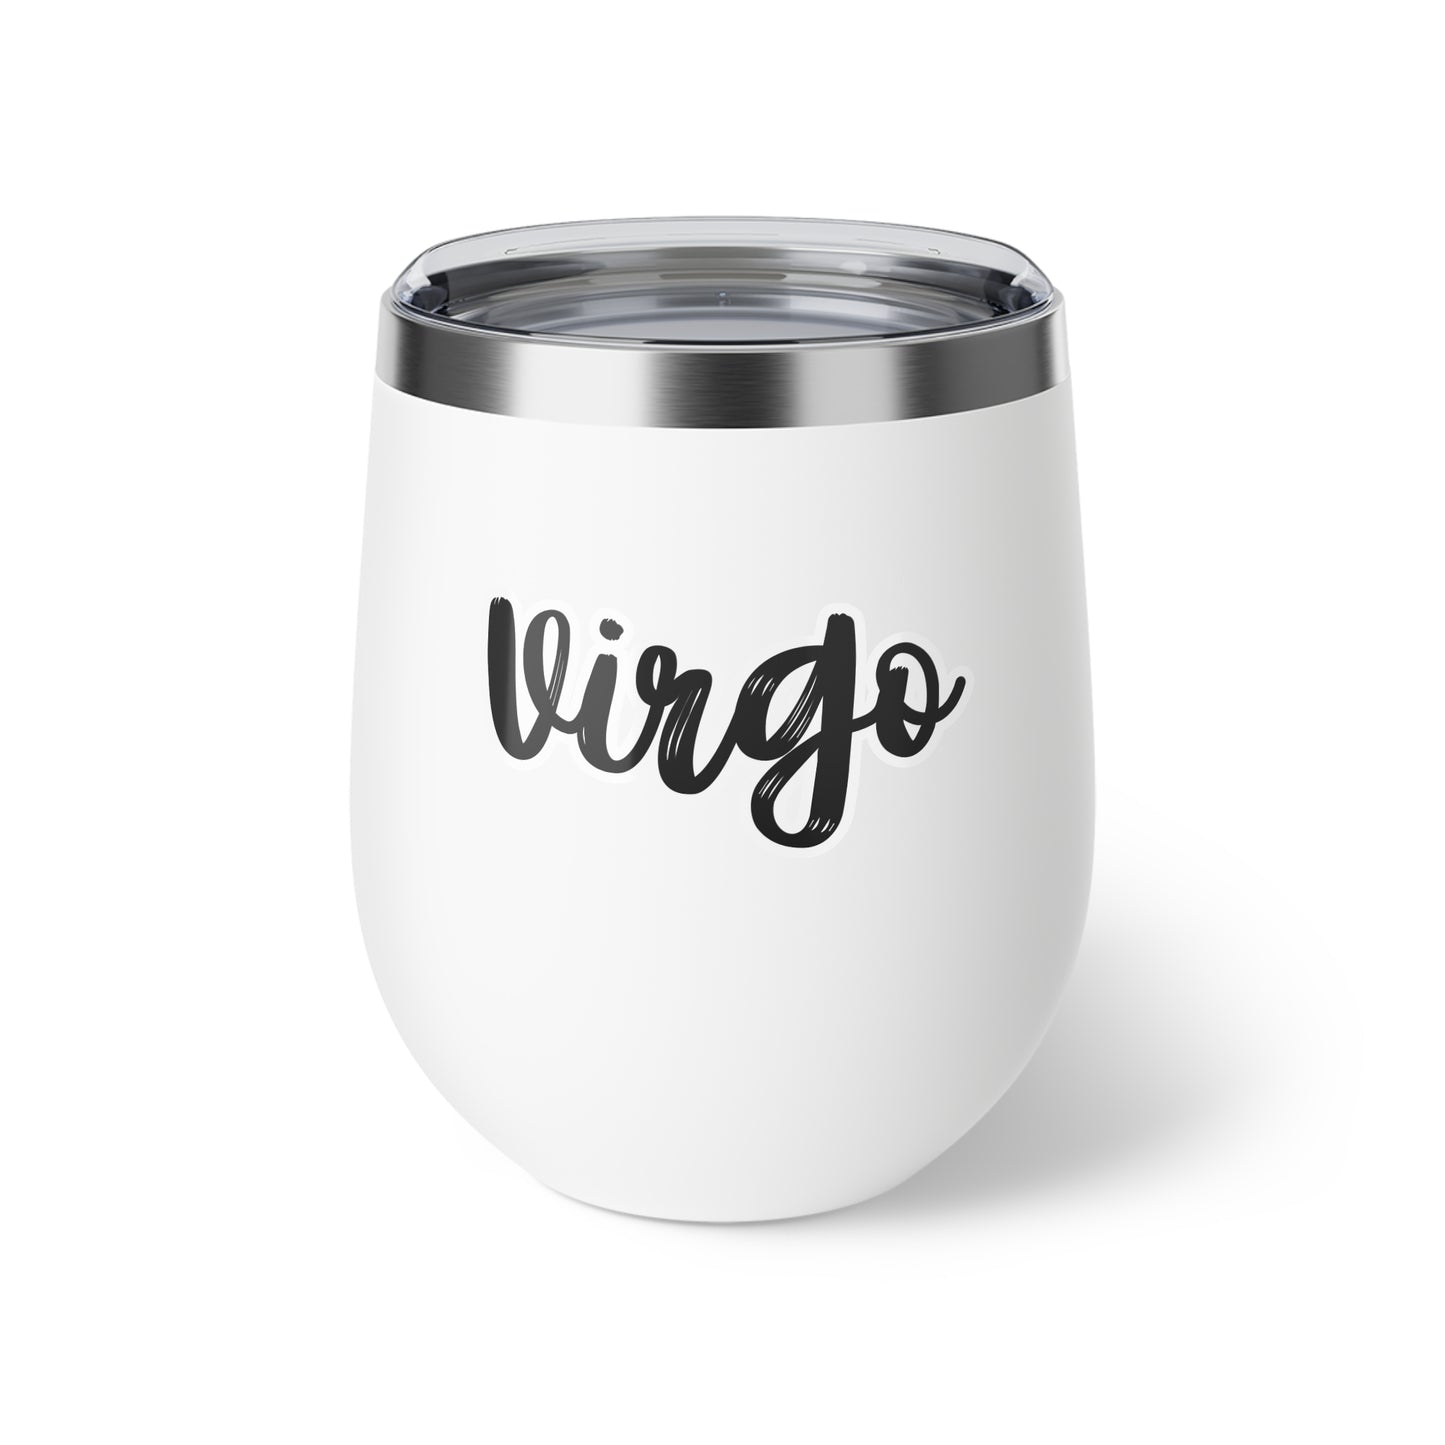 Virgo Copper Vacuum Insulated Cup, 12oz